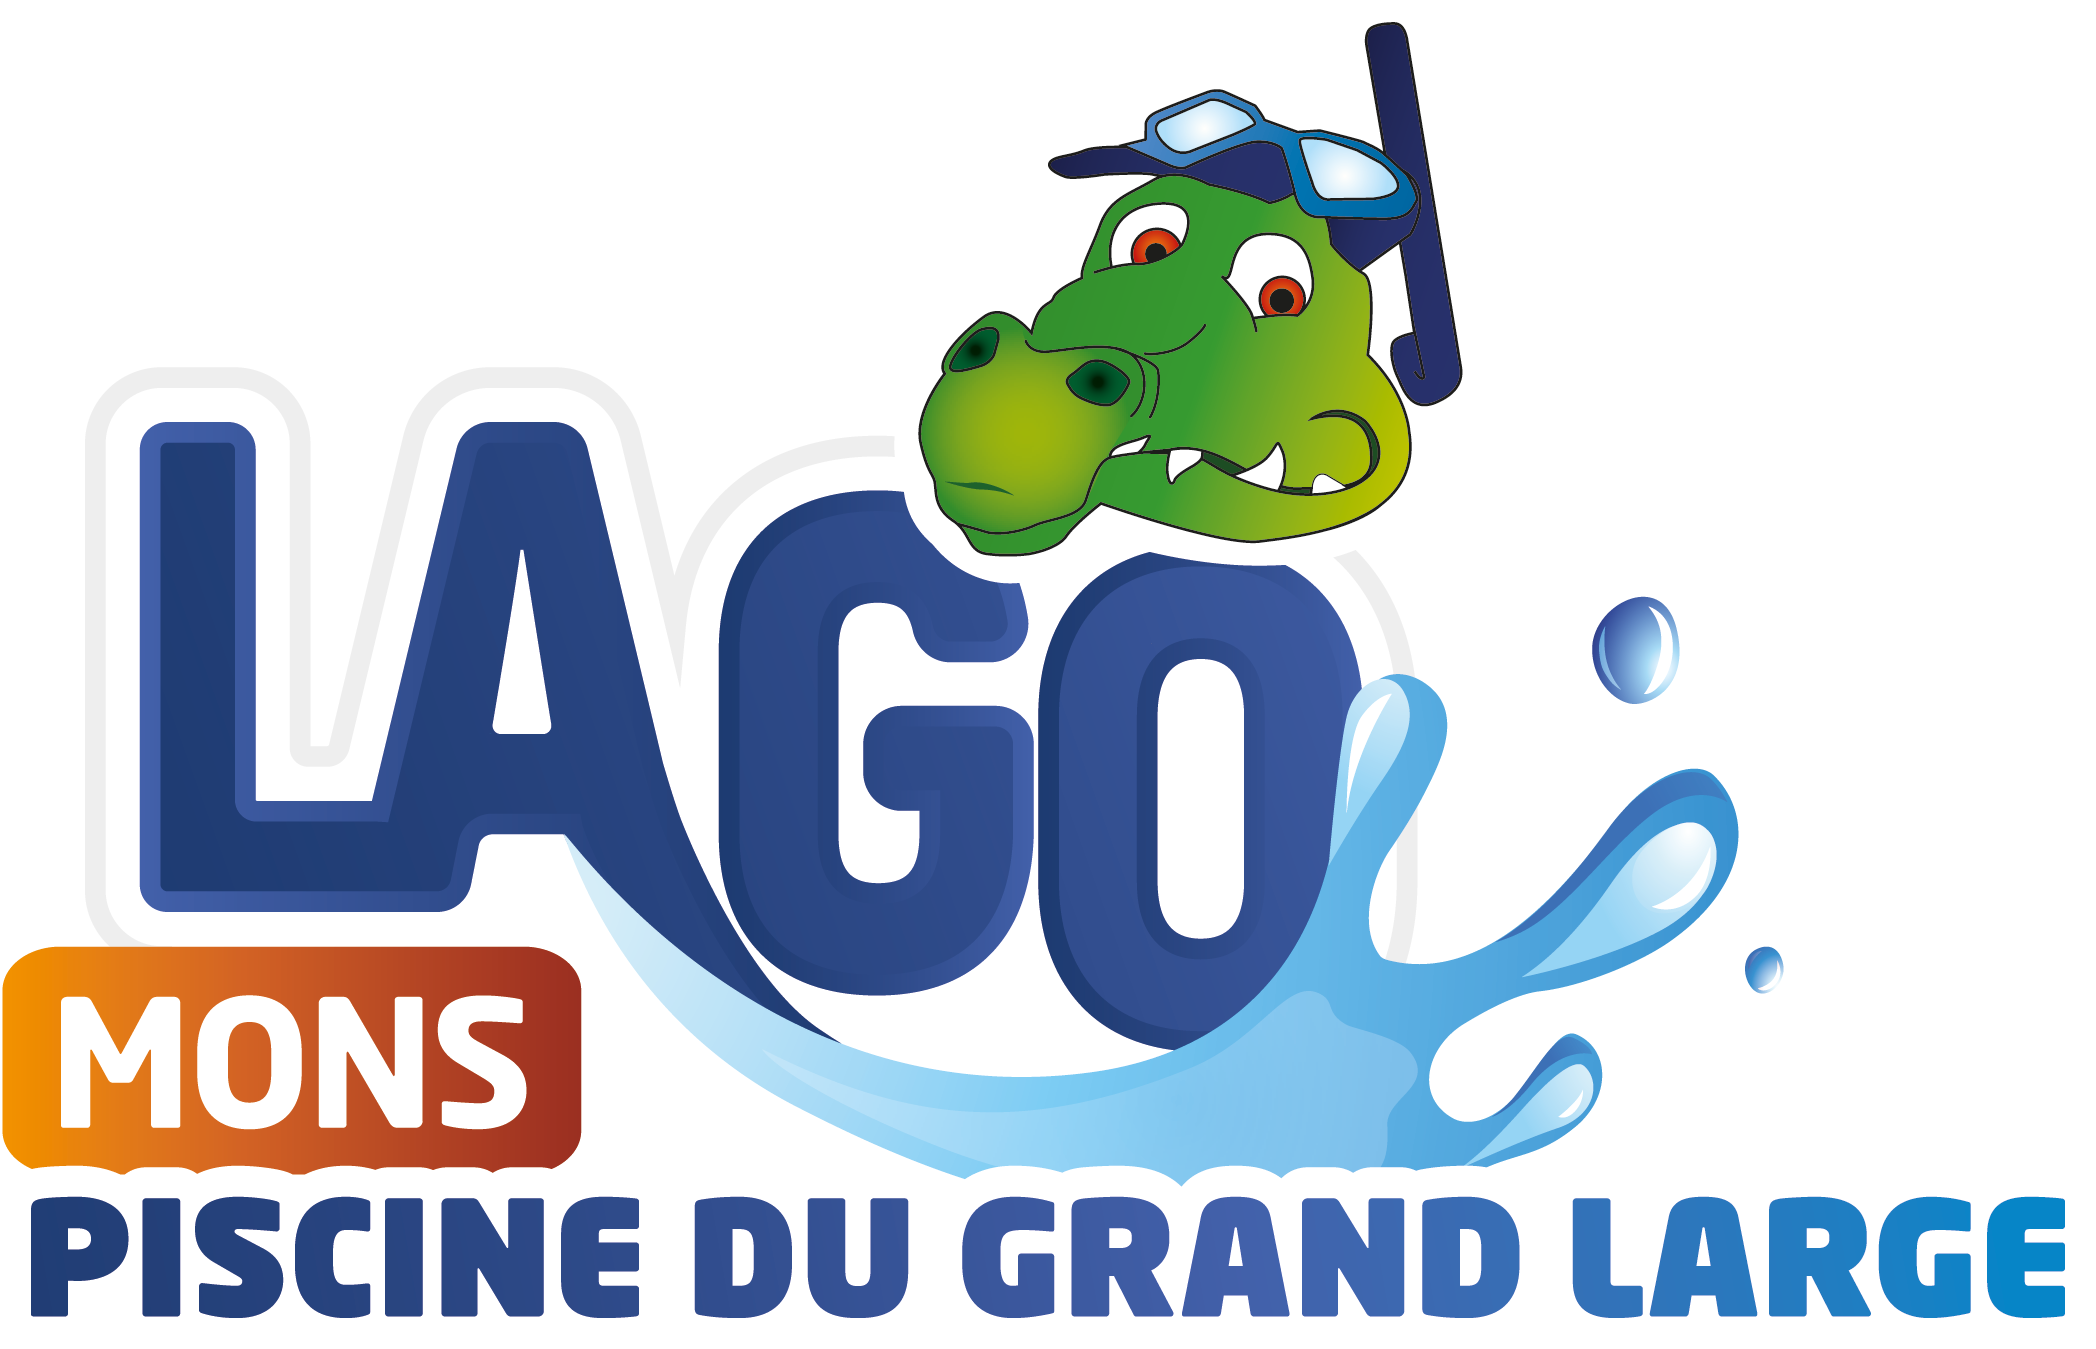 LAGO Mons Piscine du Grand Large